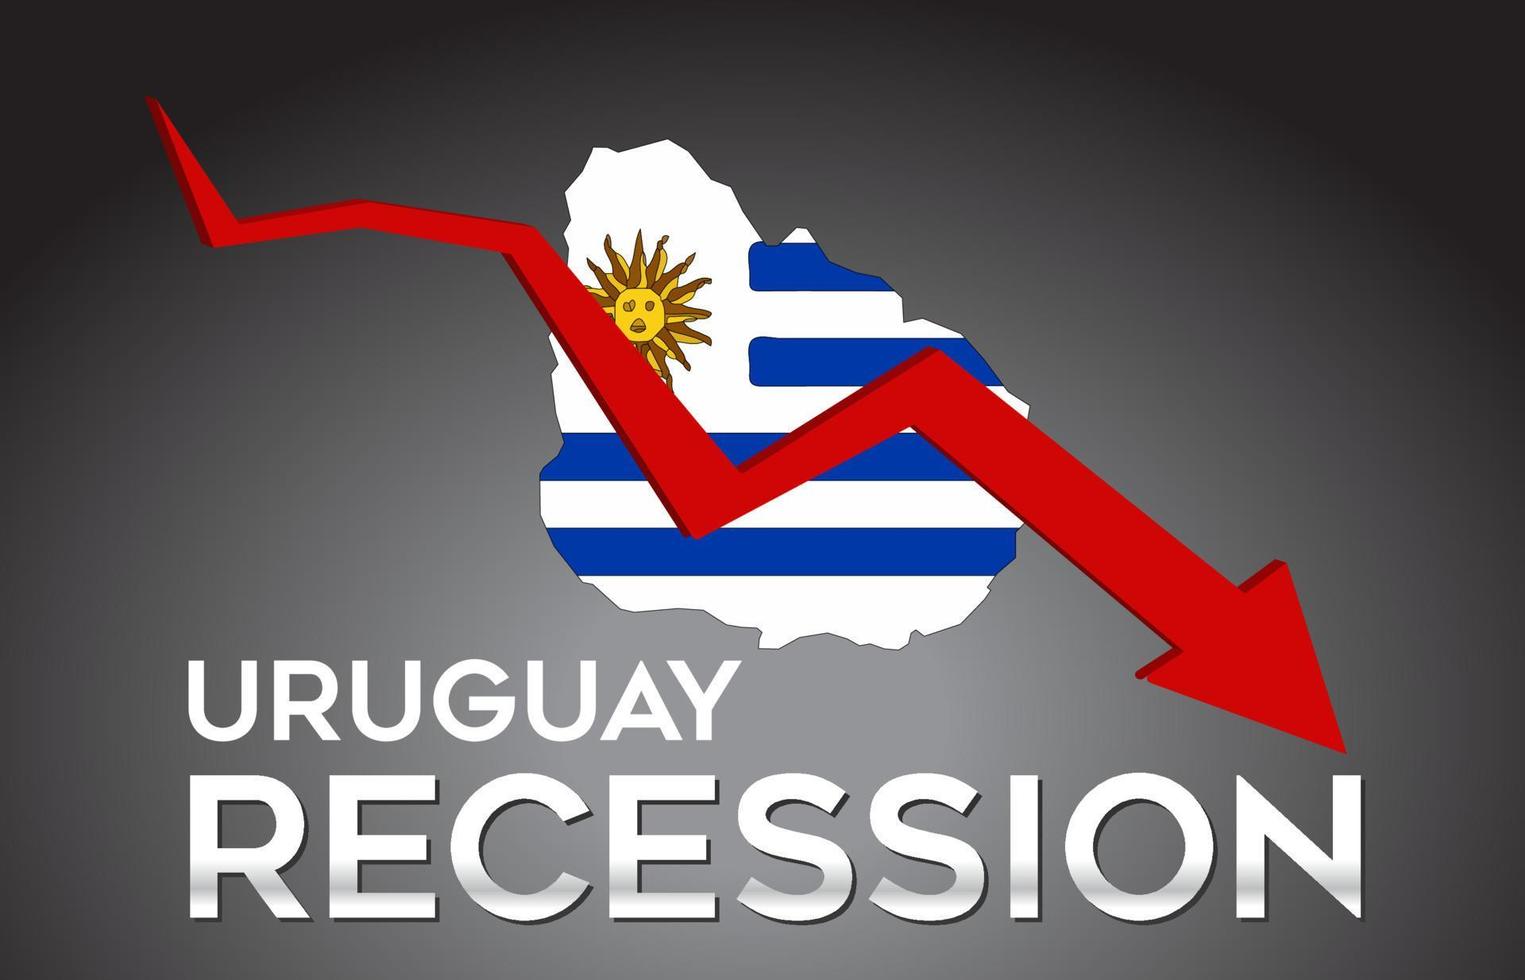 Karte der uruguayischen Rezession Wirtschaftskrise kreatives Konzept mit wirtschaftlichem Absturzpfeil. vektor